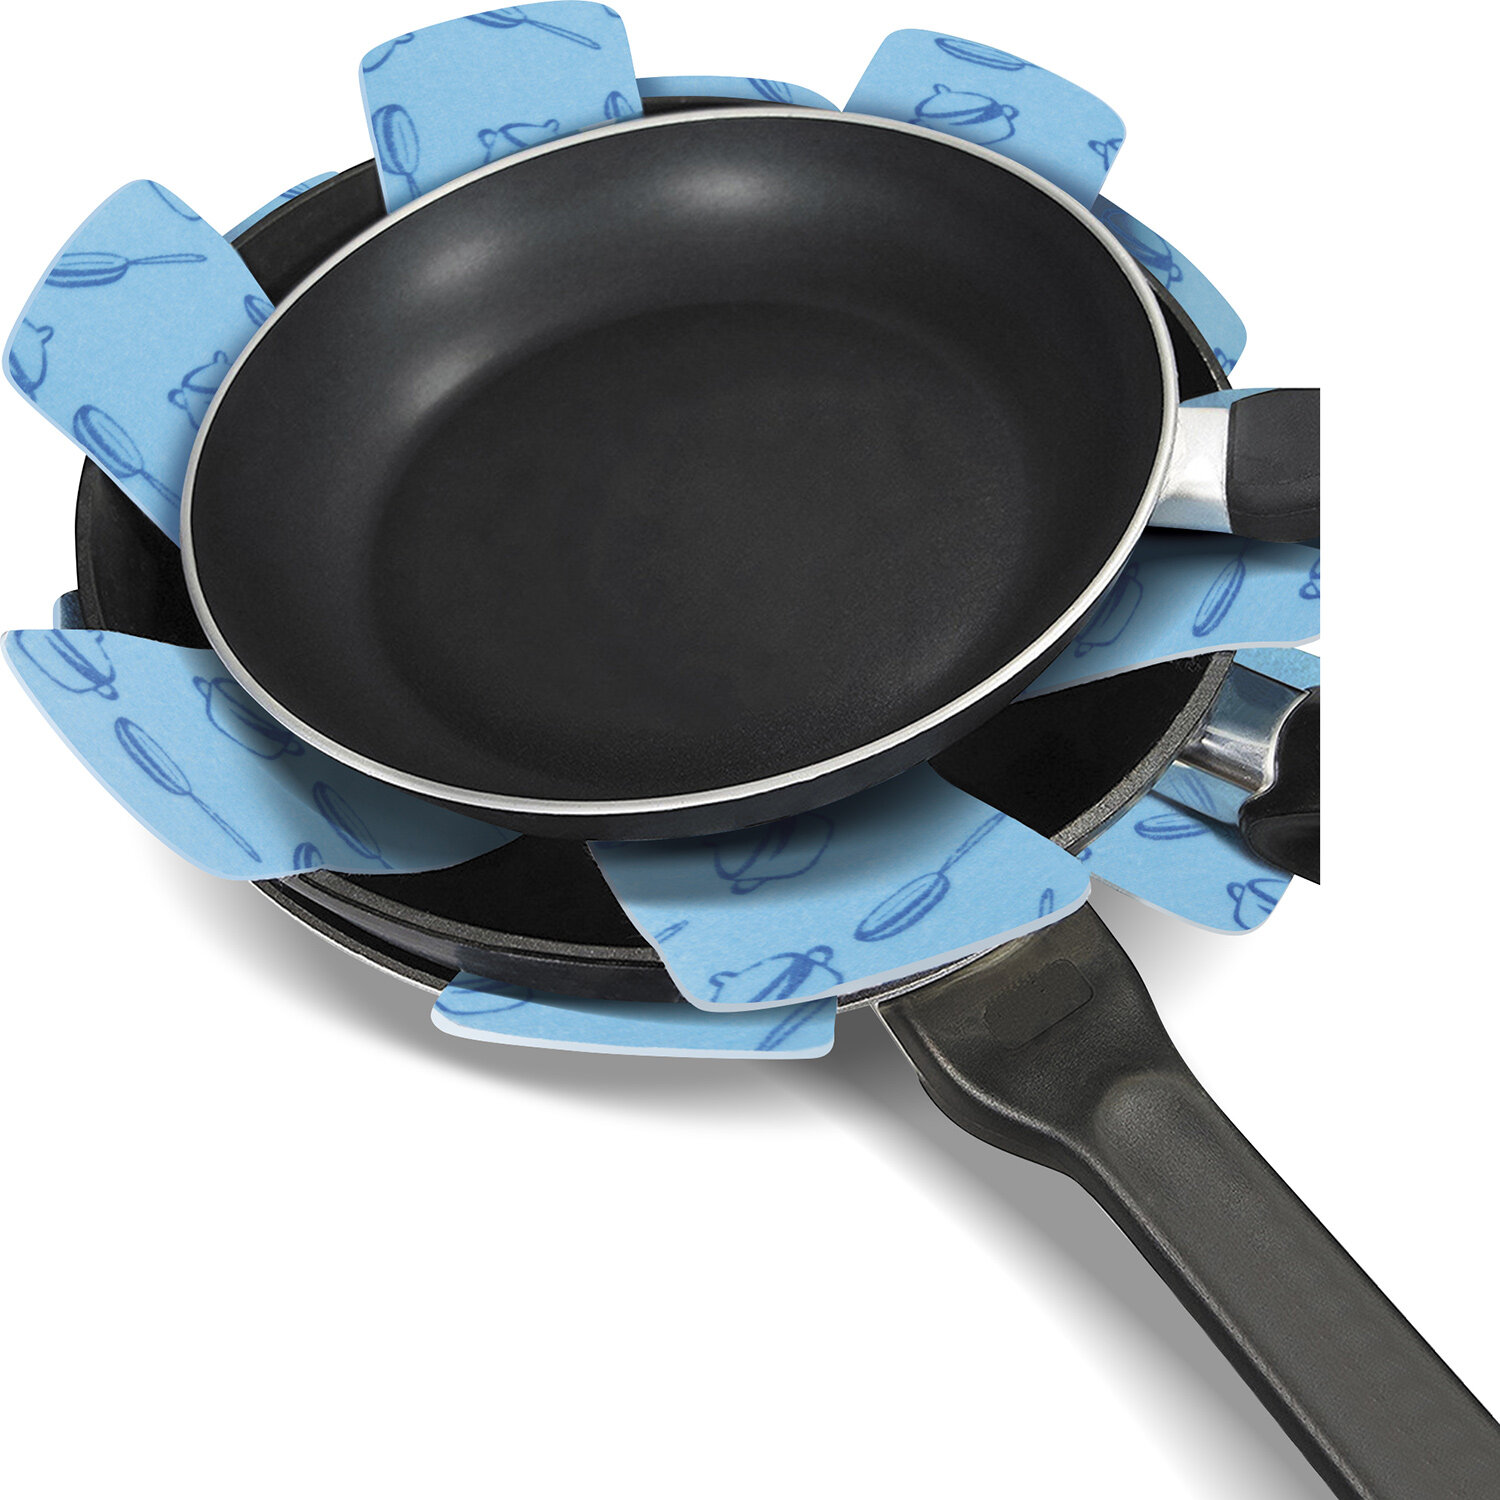 Вкладыши салфетки для бережного хранения посуды и сковородок в наборе 3 штуки защищают от царапин и сколов